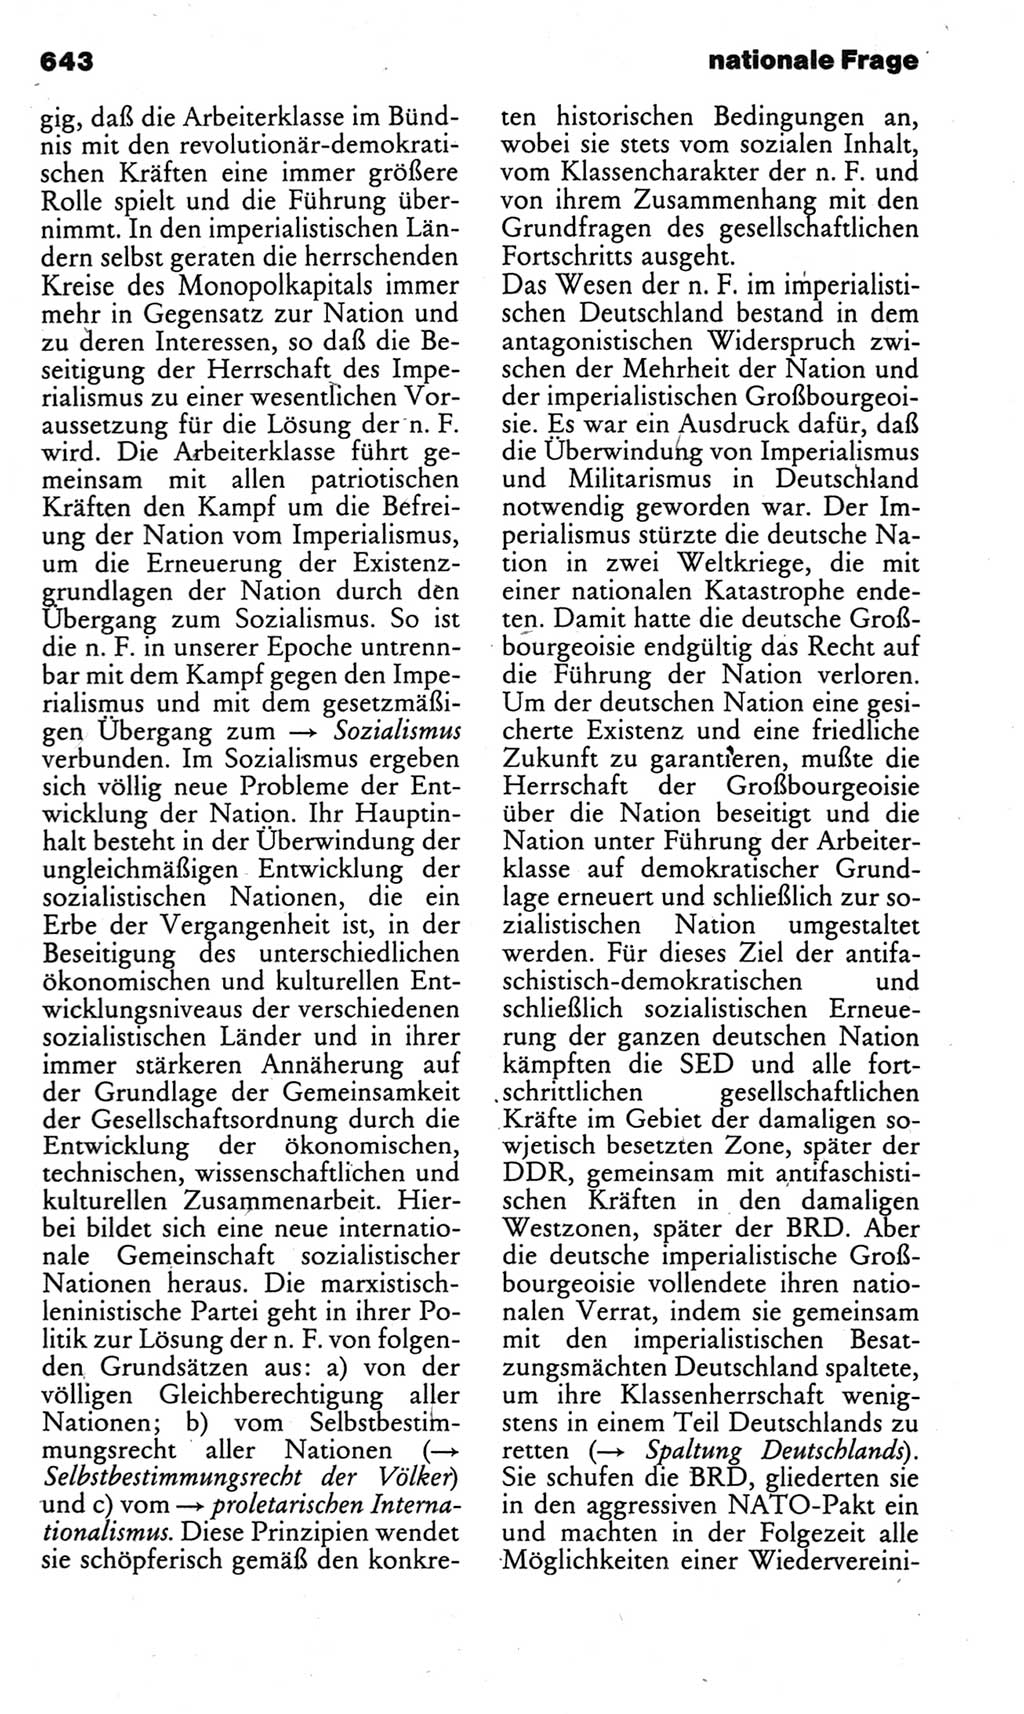 Kleines politisches Wörterbuch [Deutsche Demokratische Republik (DDR)] 1983, Seite 643 (Kl. pol. Wb. DDR 1983, S. 643)